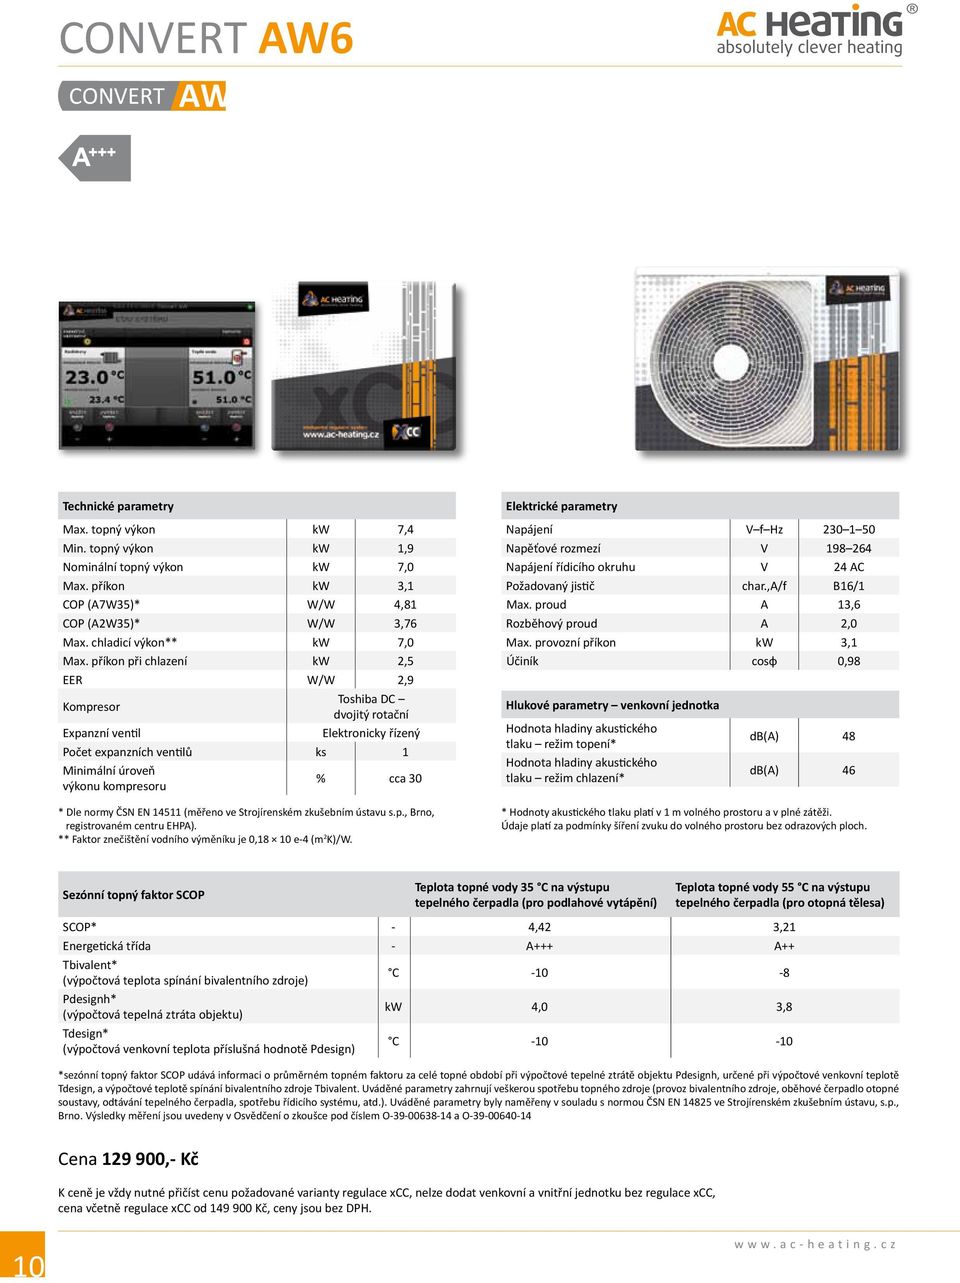 příkon při chlazení kw 2,5 EER W/W 2,9 Kompresor Toshiba DC dvojitý rotační Expanzní ventil Elektronicky řízený Počet expanzních ventilů ks 1 Minimální úroveň výkonu kompresoru % cca 30 * Dle normy